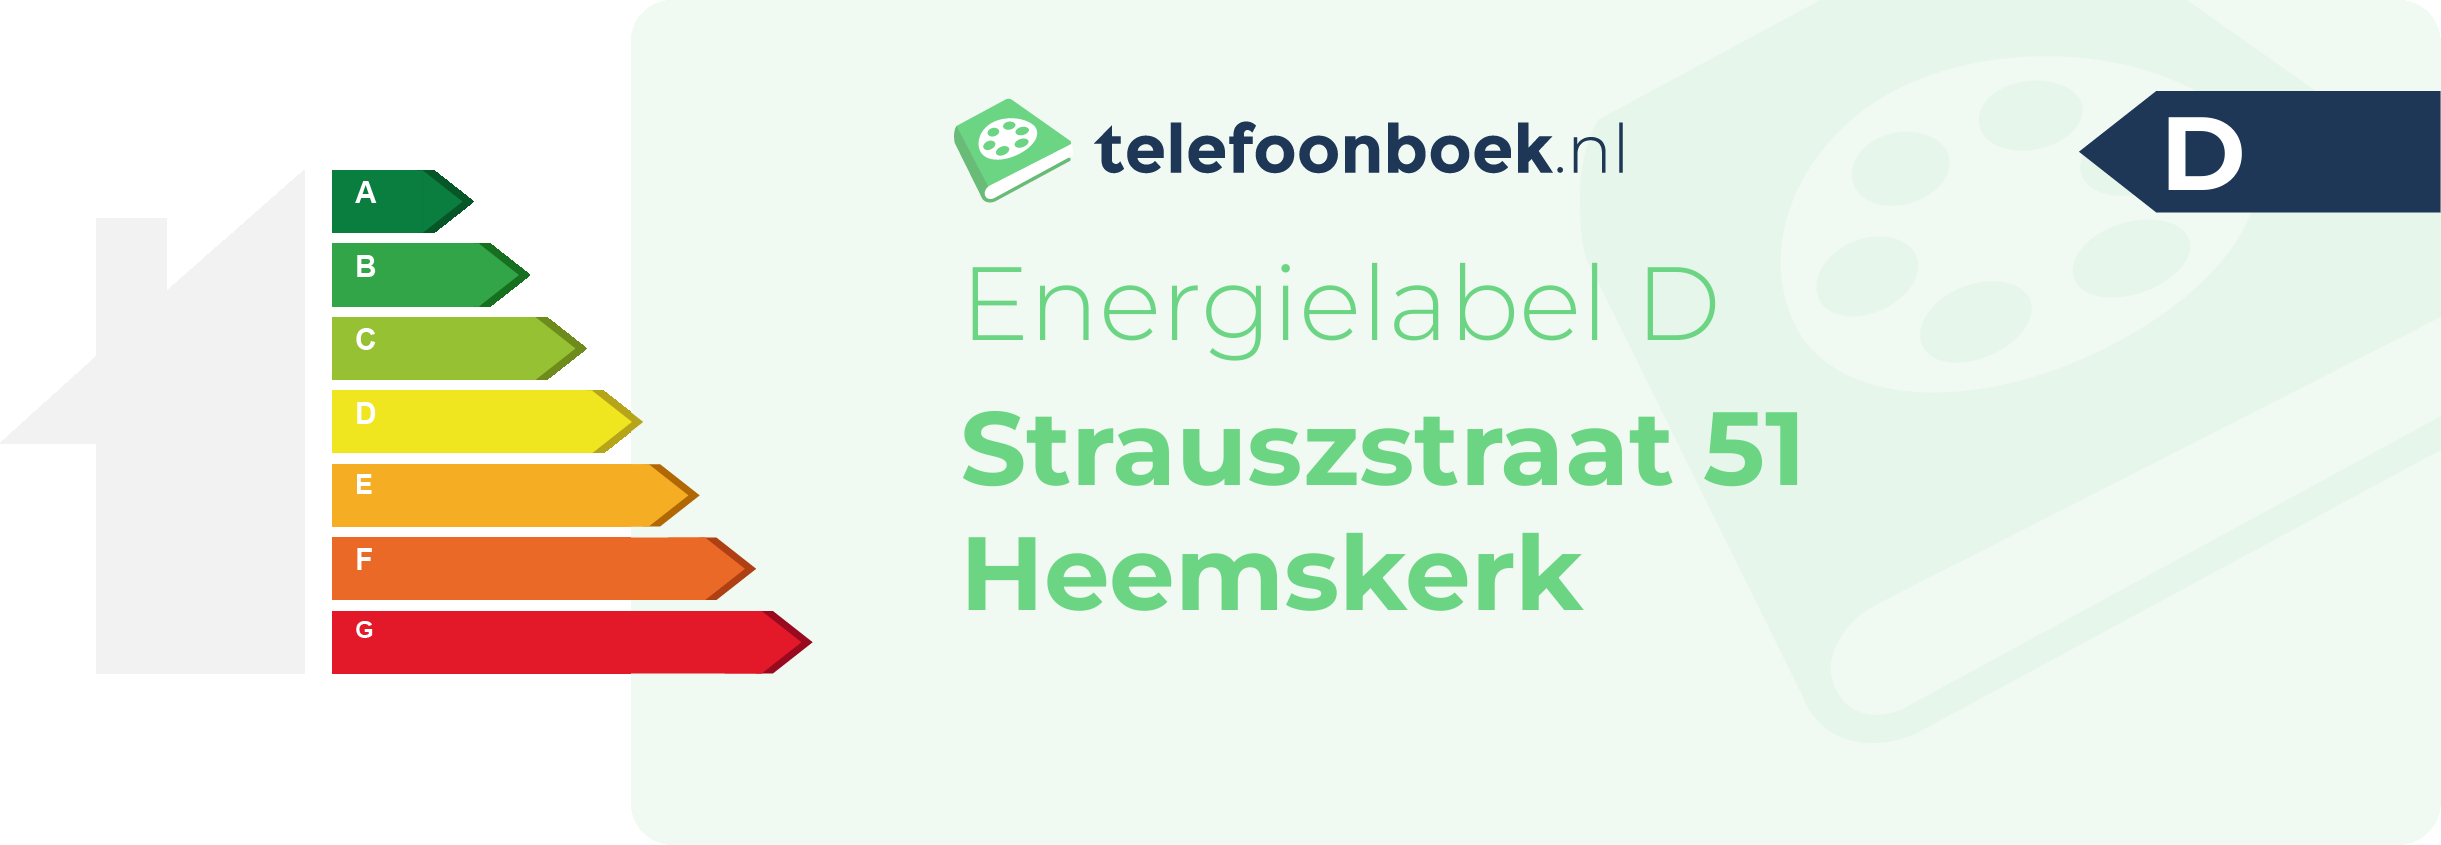 Energielabel Strauszstraat 51 Heemskerk